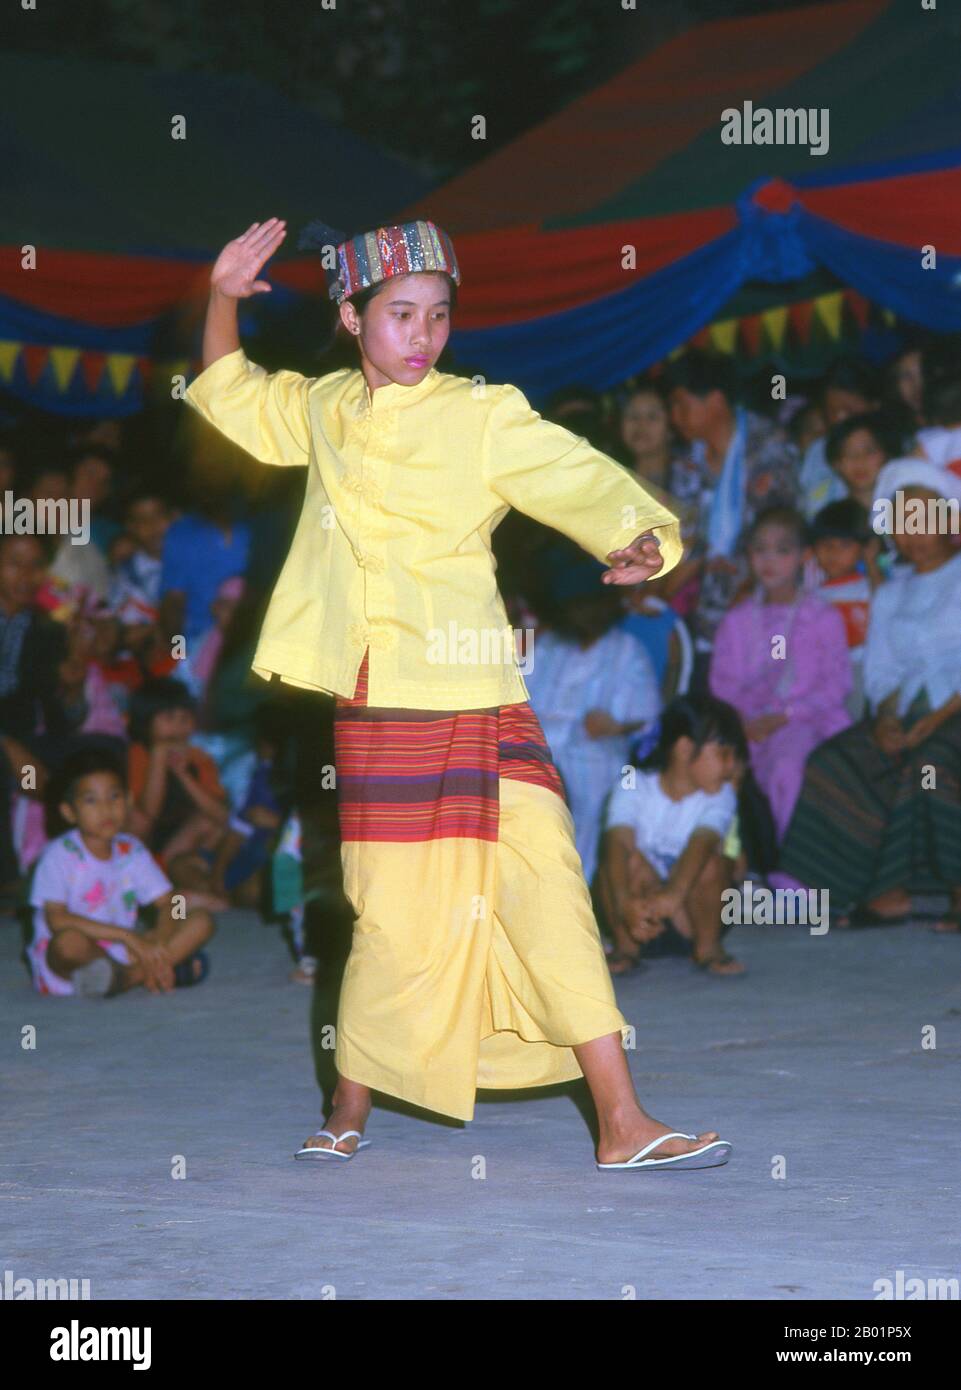 Thaïlande : une fille Shan (Tai Yai) danse à la veille du festival Poy sang long, Wat Pa Pao (temple Shan), Chiang Mai, nord de la Thaïlande. Wat Pa Pao est un temple bouddhiste Shan (Tai Yai) qui sert de centre à la communauté Shan de Chiang Mai. Il a été construit à la fin du 19e siècle. Une fois par an, Wat Pa Pao accueille les luk kaeo, ou « fils de cristal » - de jeunes garçons Shan sur le point d'être ordonnés dans le monkhood bouddhiste. Beaucoup de ces novices se rendent à Chiang Mai depuis les communautés Shan environnantes de Mae Cham, Mae Rim, Chiang Dao et Fang. Cette cérémonie Shan annuelle est appelée Poy sang long. Banque D'Images